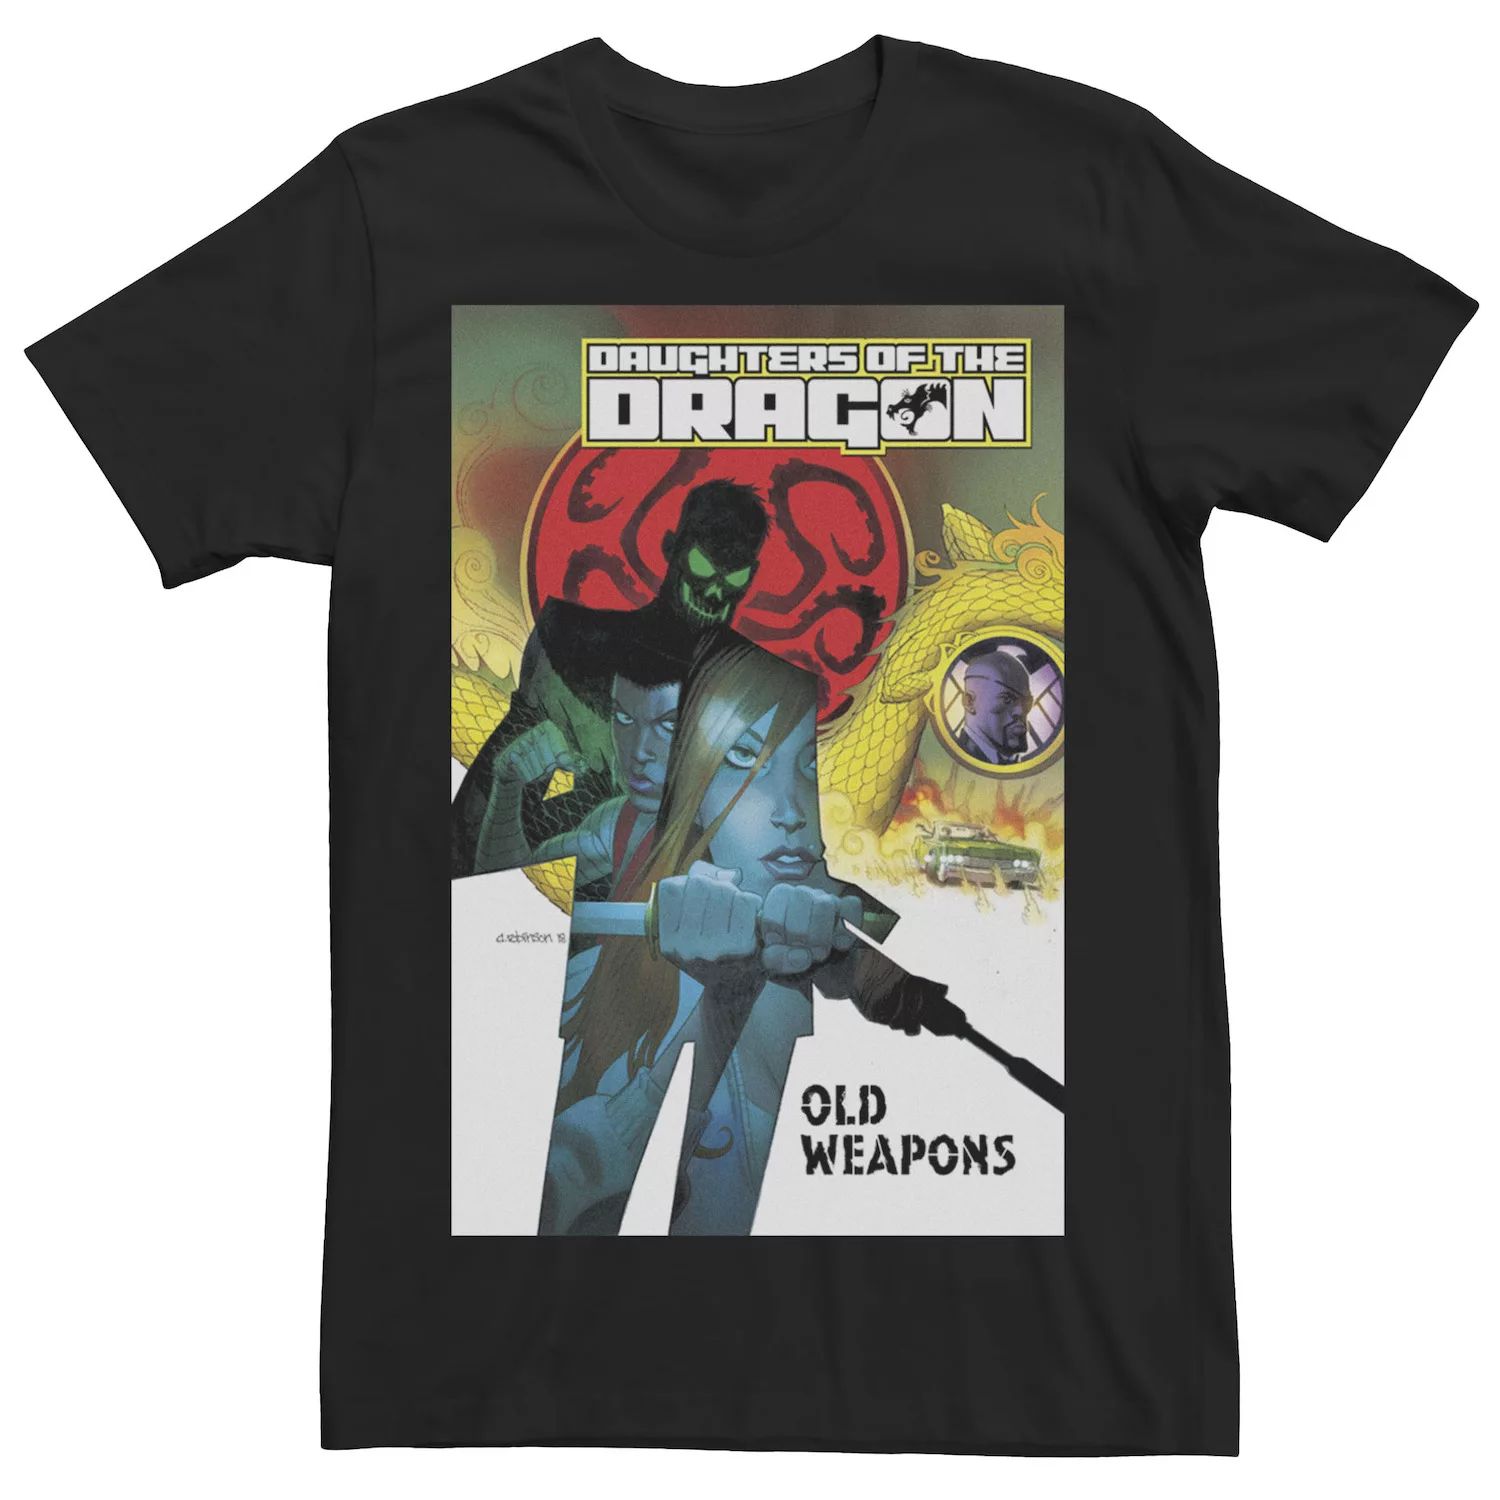 Мужская футболка с обложкой комикса Daughters Of the Dragon Marvel мужская черная футболка с обложкой комикса marvel prince namor черный